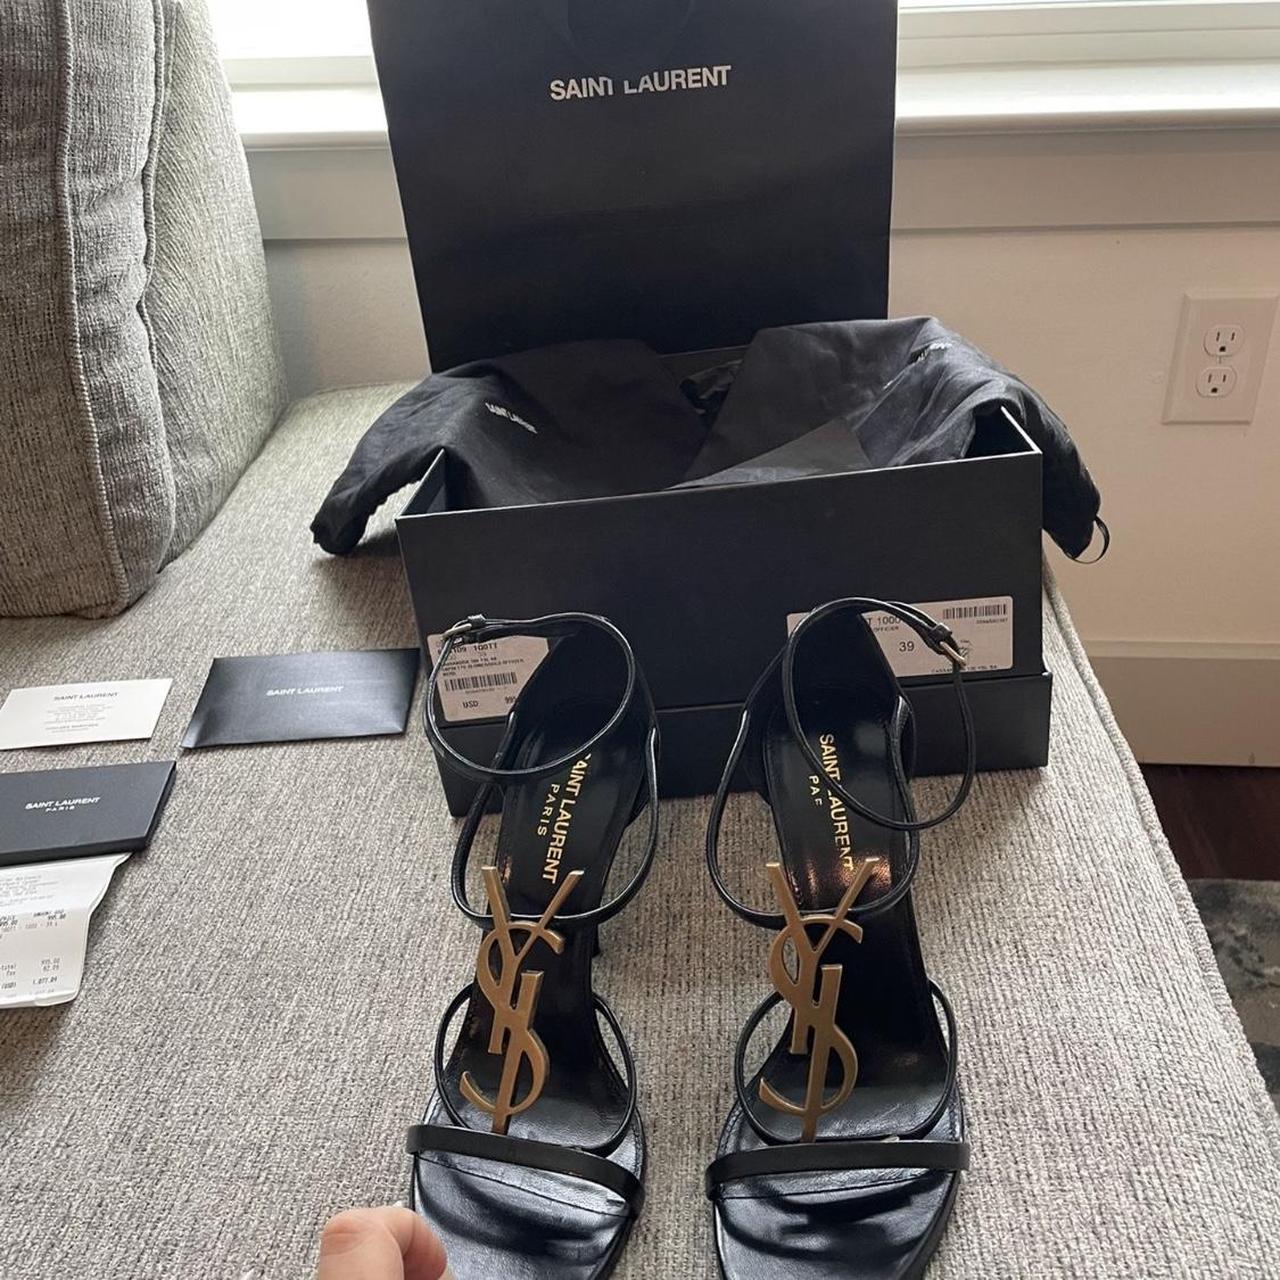 Yves Saint Laurent, Shoes, Ysl Logo Pumps Gold Heel Size 39